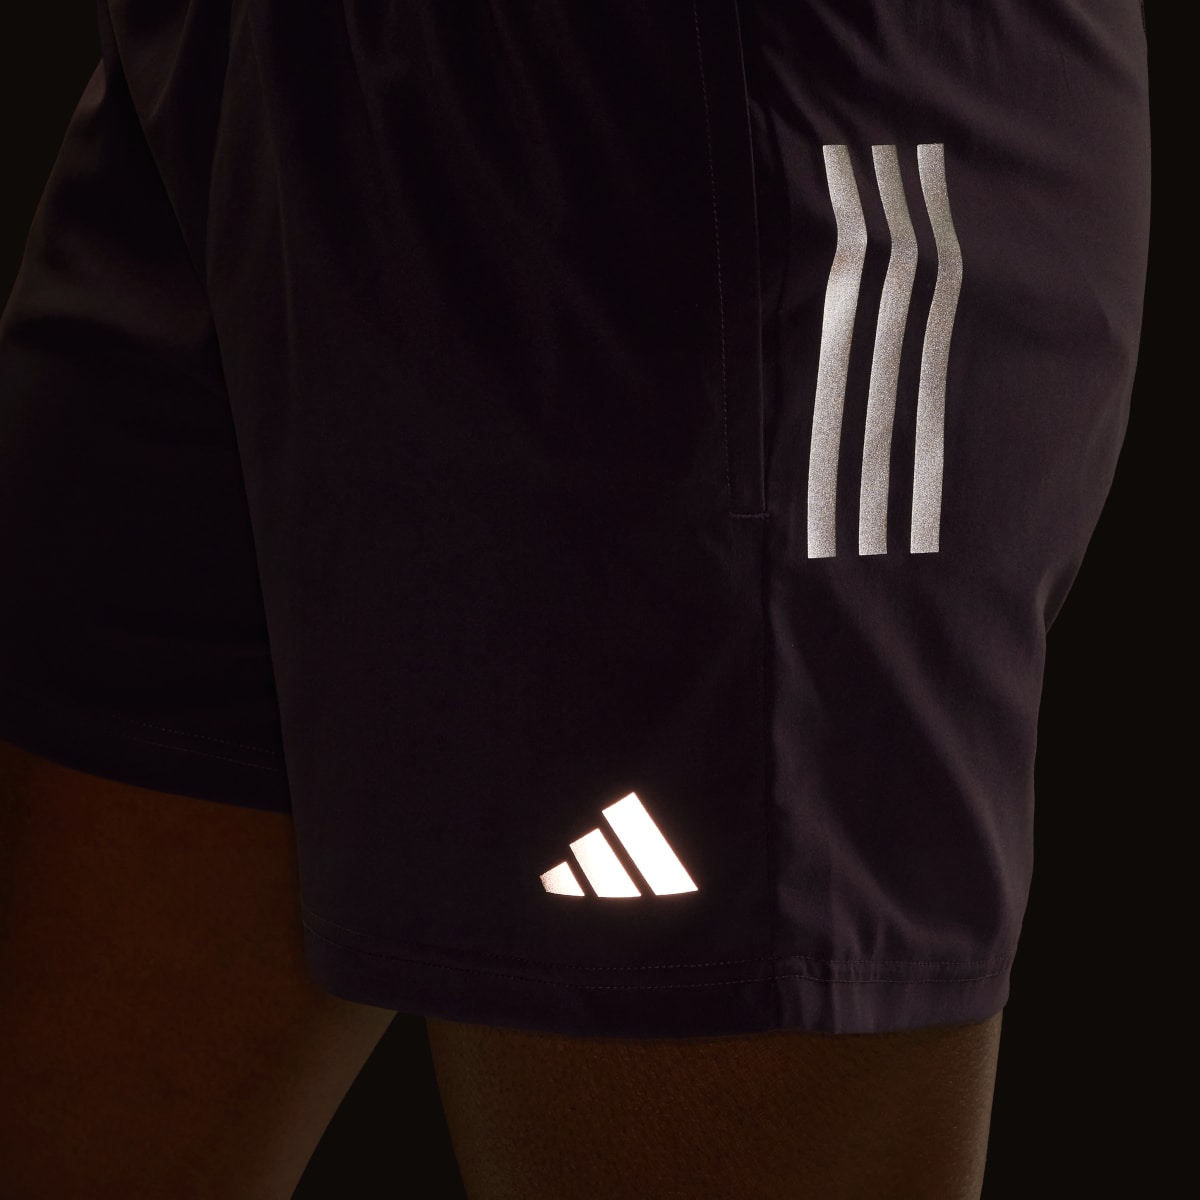 Adidas Own The Run Shorts. 6